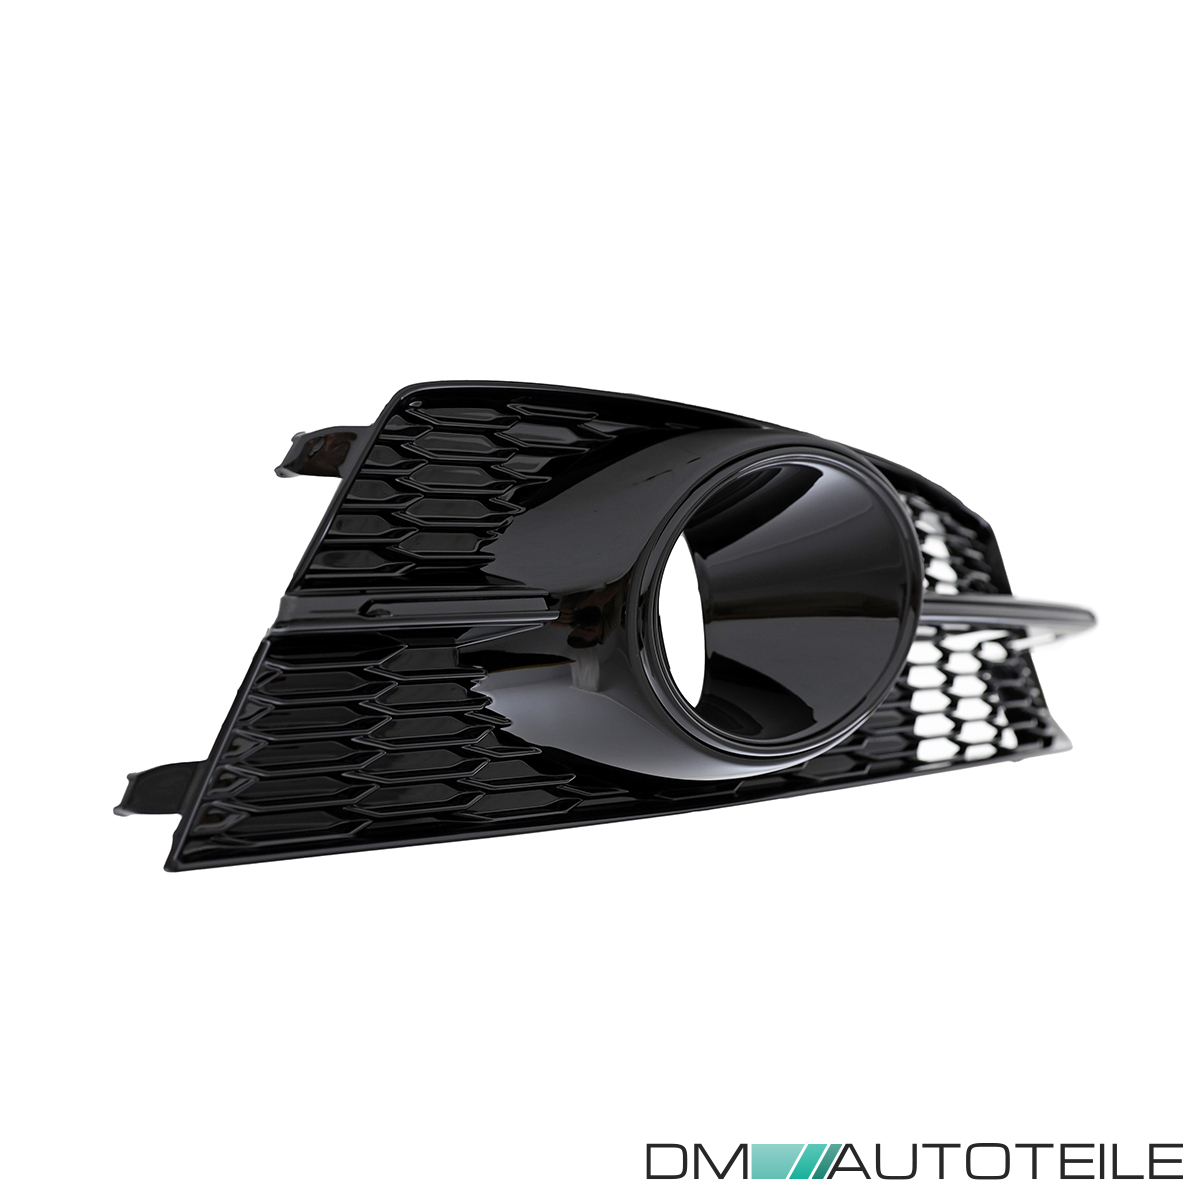 Stoßstangengitter SET schwarz glanz komplett für Audi A6 C7 S-Line ab